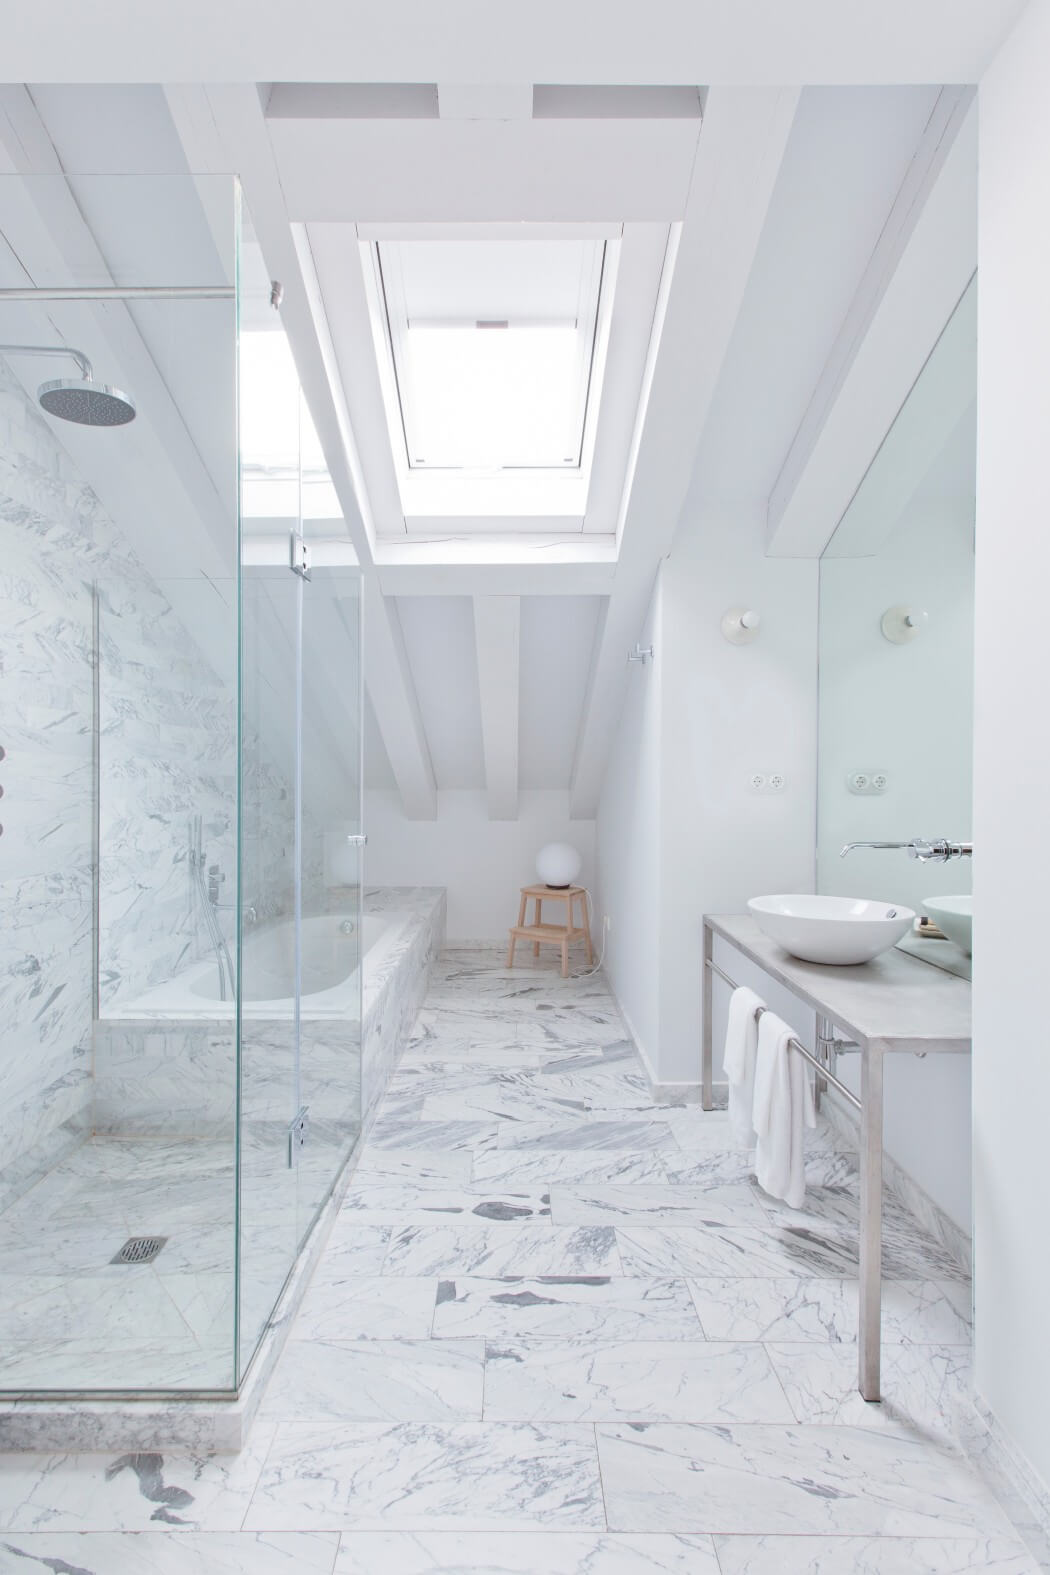 Luxe zolderbadkamer met wit carrara marmeren tegels